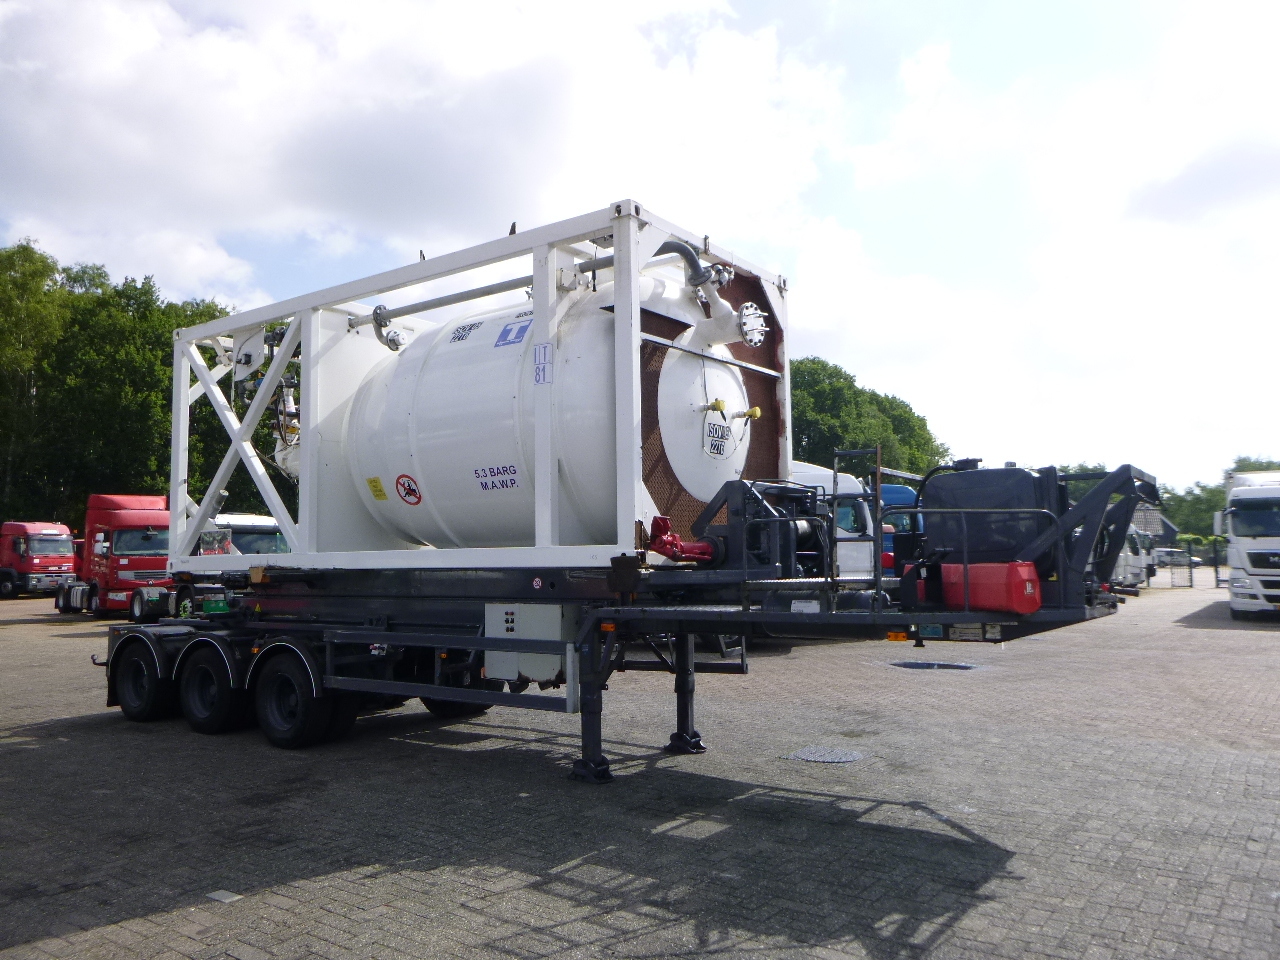 Bulk-säiliöperävaunu kuljetusta varten jauhot HTS 3-axle container trailer (sliding, tipping) + 20 ft ISO silo tank container 15 m3 / 1 comp: kuva Bulk-säiliöperävaunu kuljetusta varten jauhot HTS 3-axle container trailer (sliding, tipping) + 20 ft ISO silo tank container 15 m3 / 1 comp